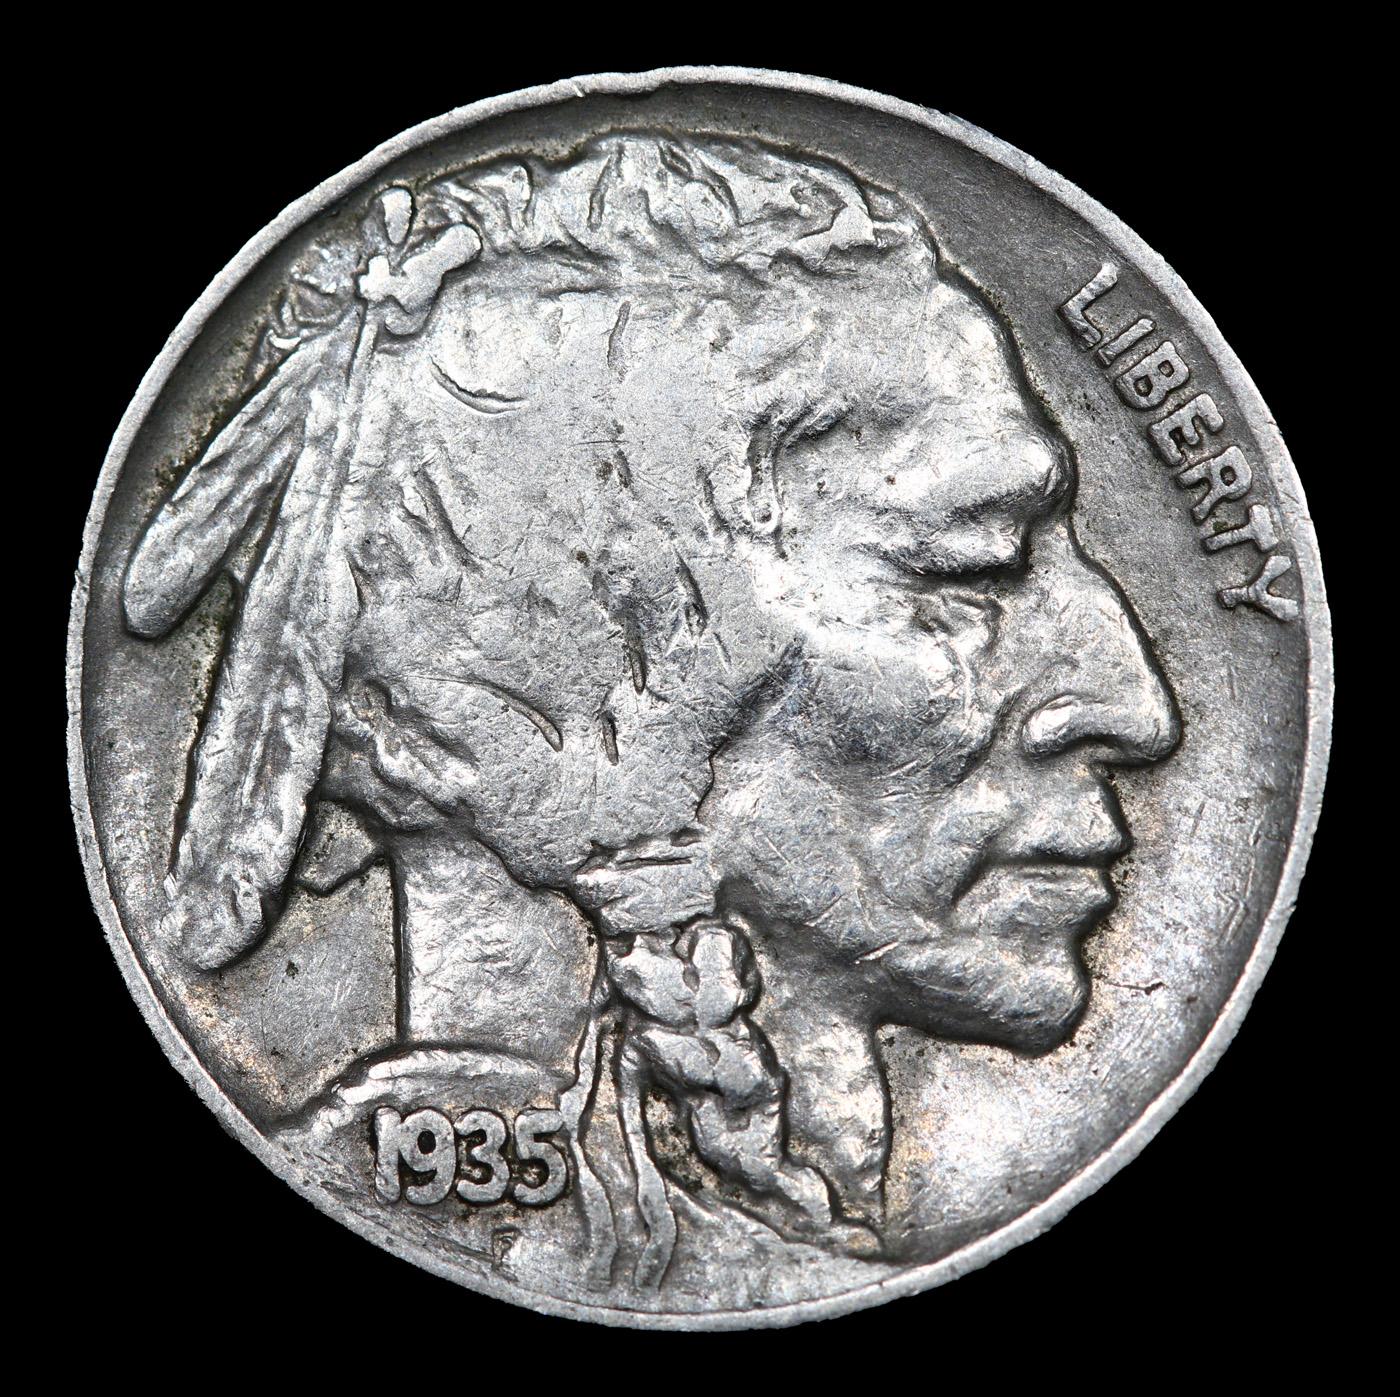 1935-p Buffalo Nickel 5c Grades Choice AU/BU Slider